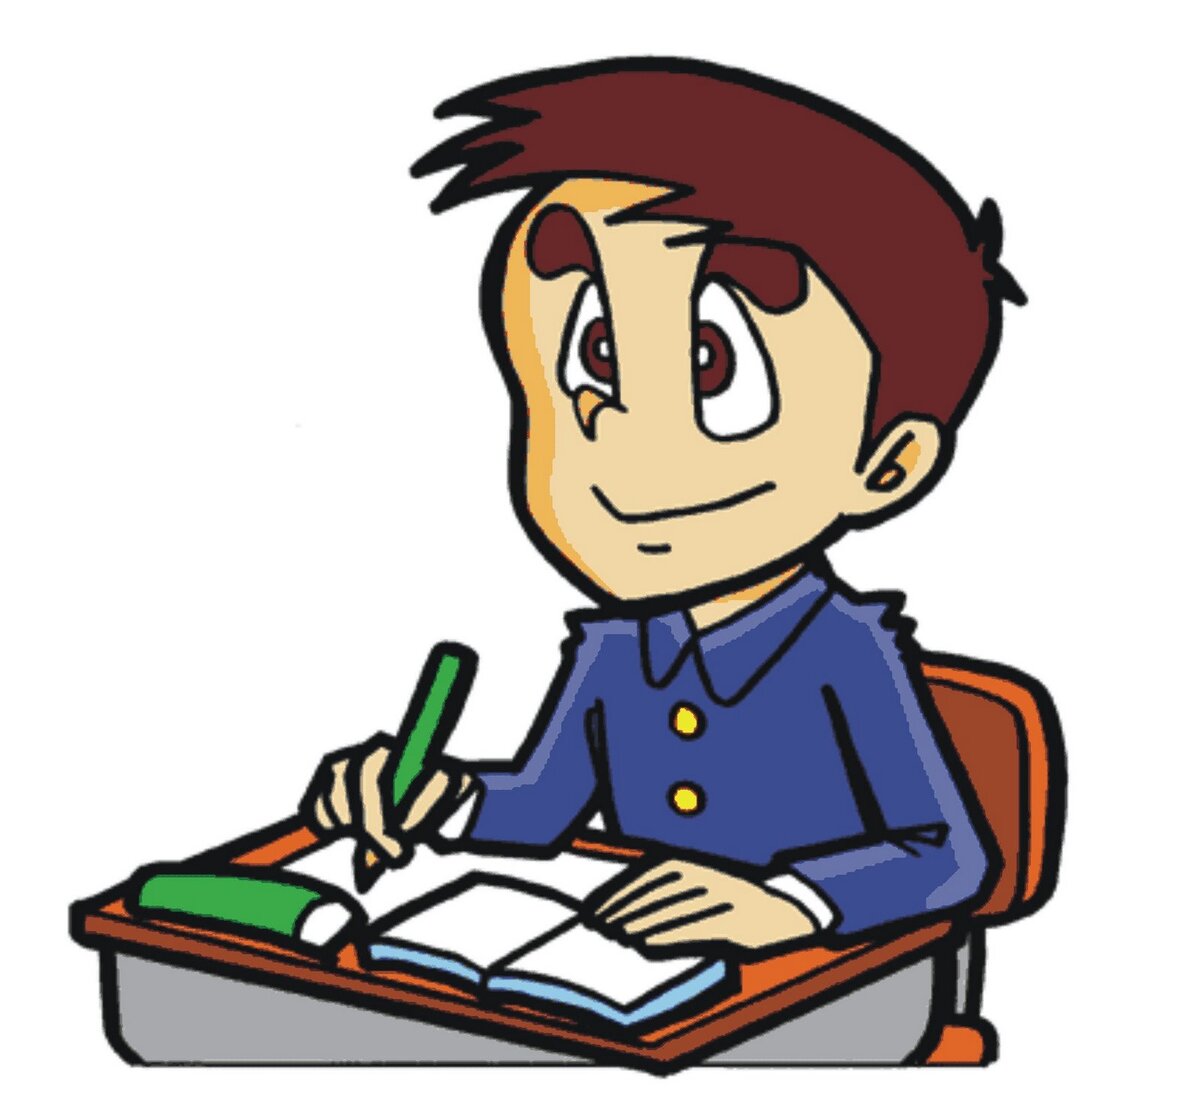 Рабочий лист предназначен для учеников 8 класса и может быть использован на уроках, для домашнего задания или репетиторских занятий.